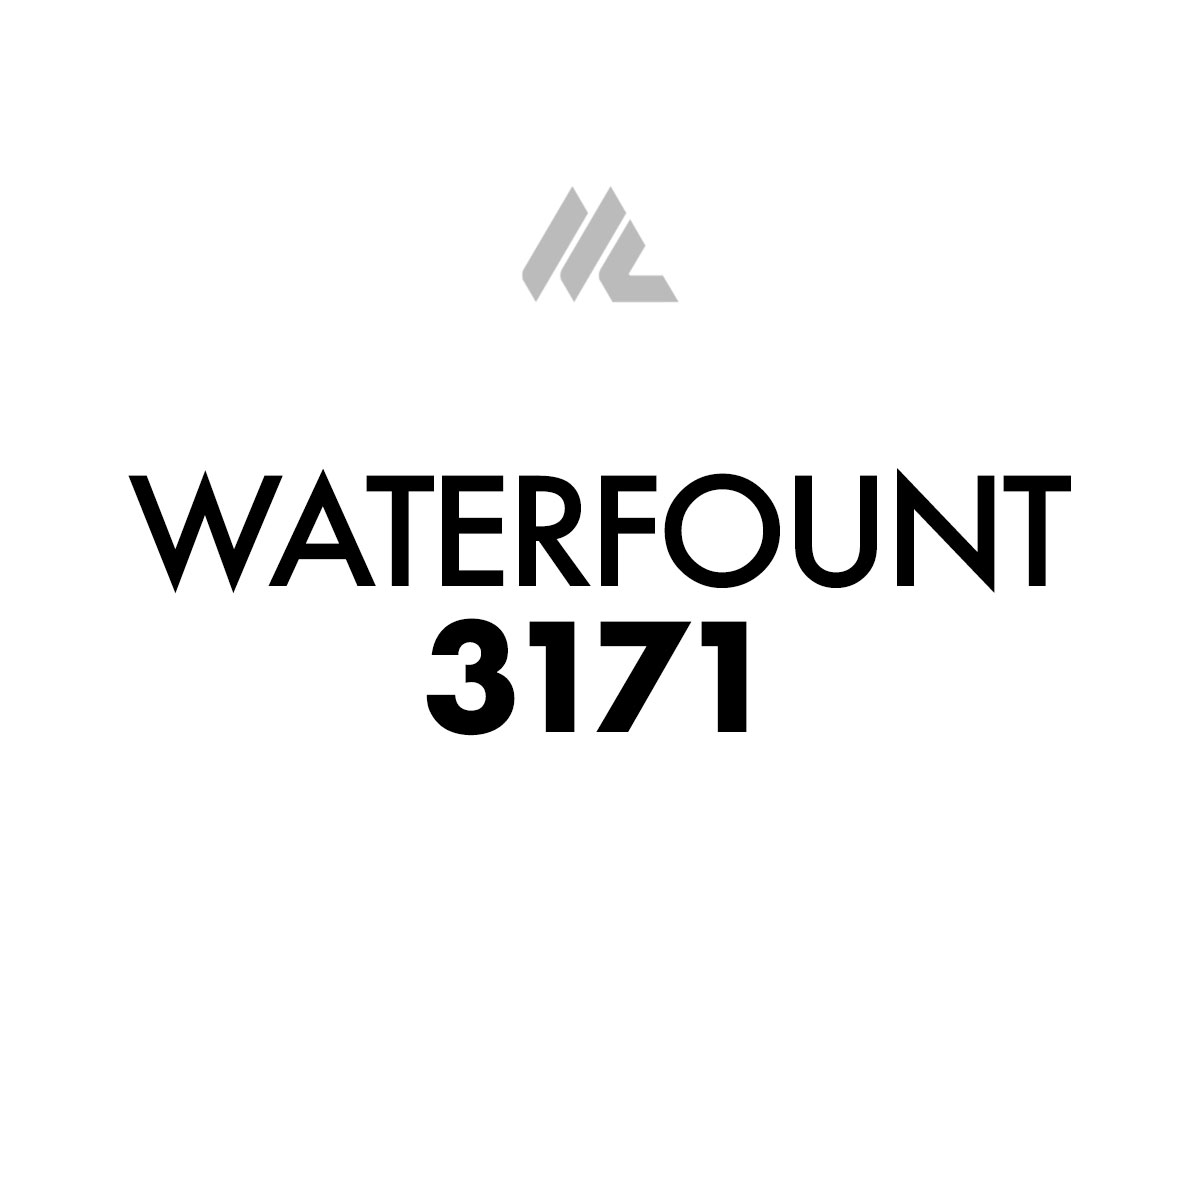 Solucion de Fuente Waterfount 3171